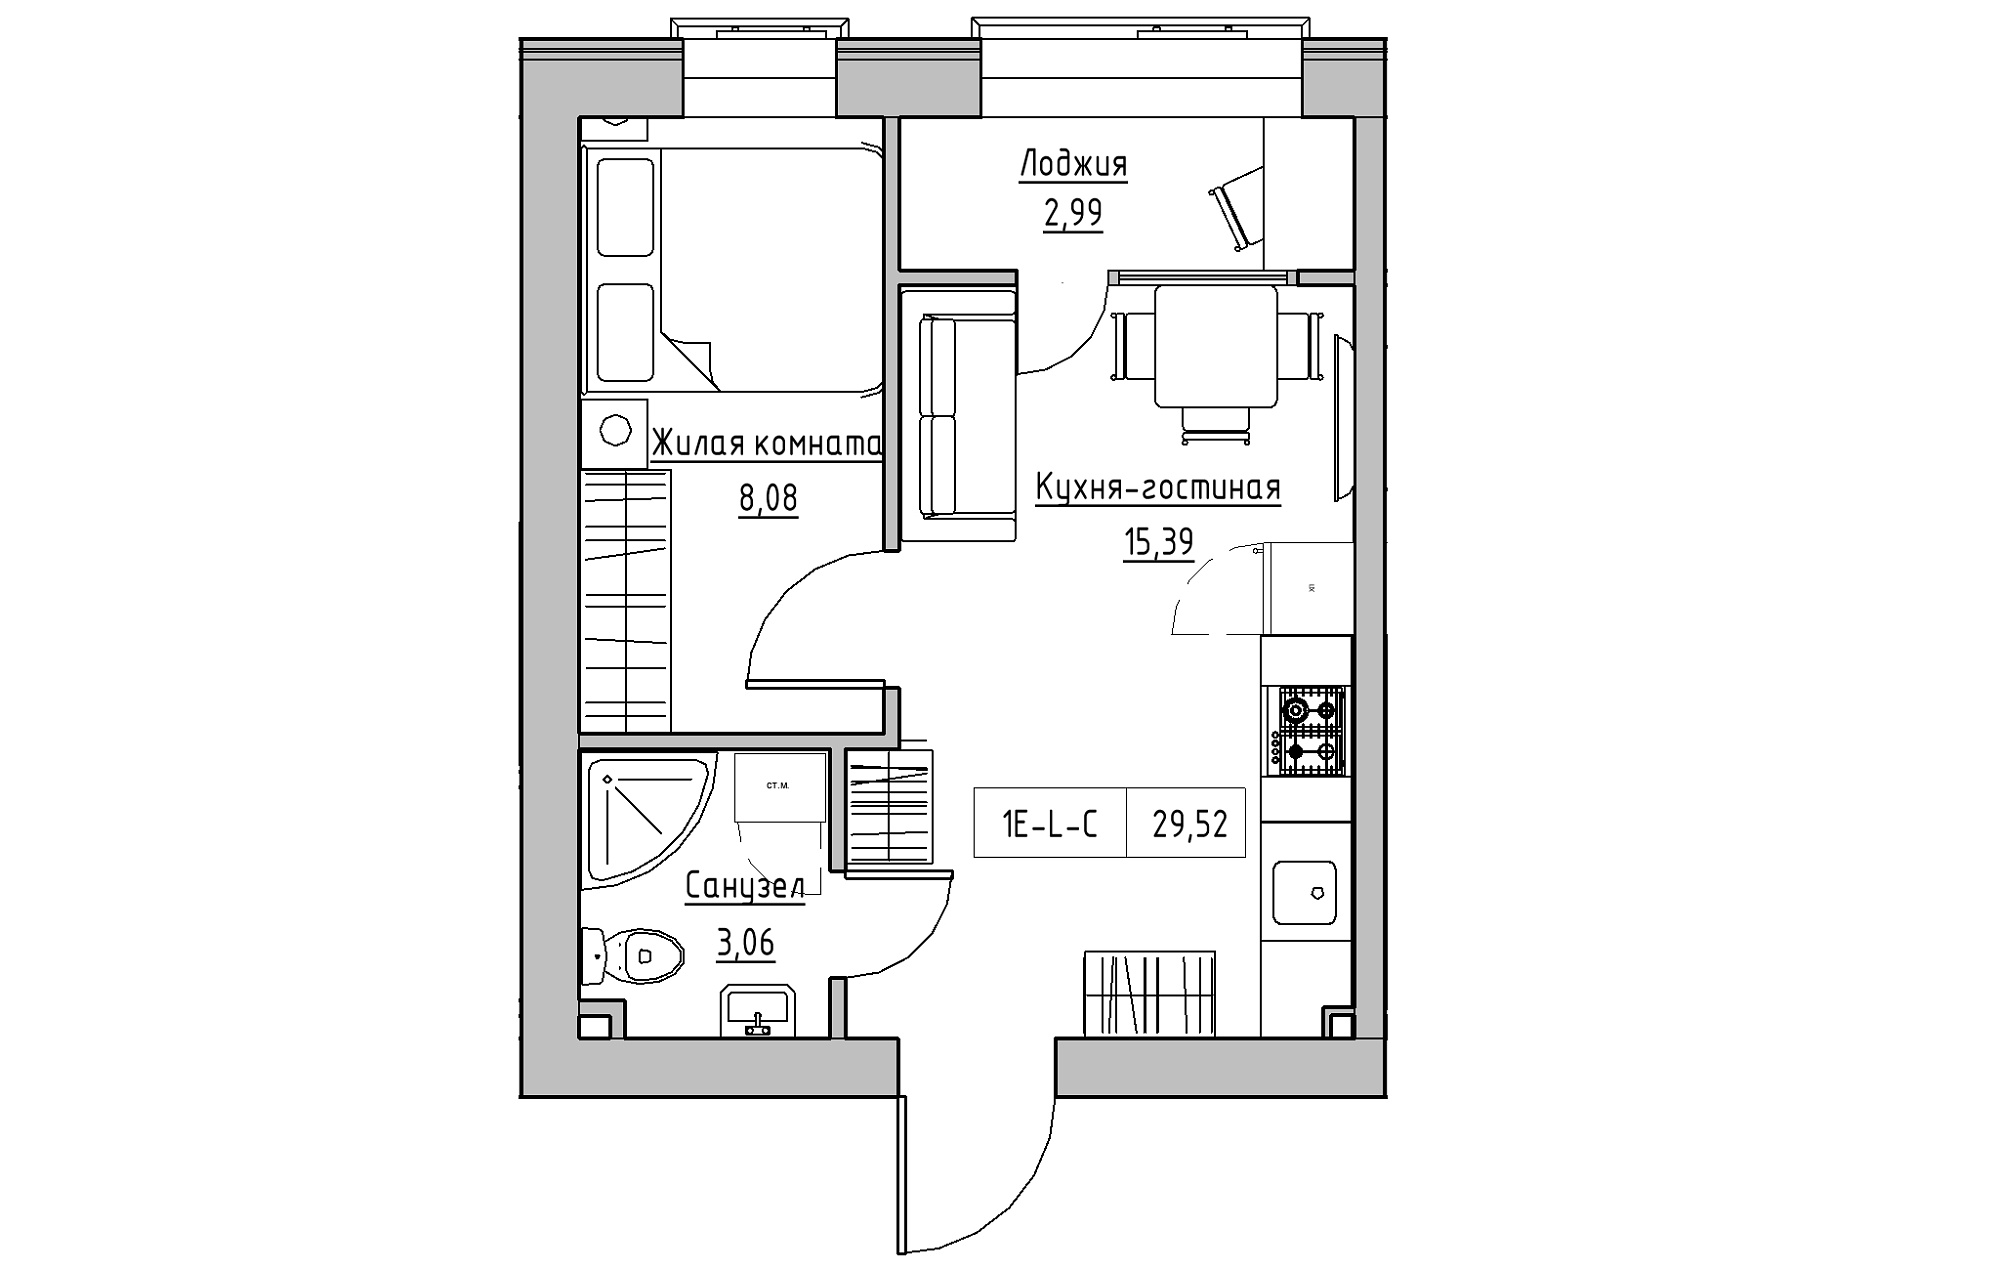 Планування 1-к квартира площею 29.52м2, KS-018-03/0006.